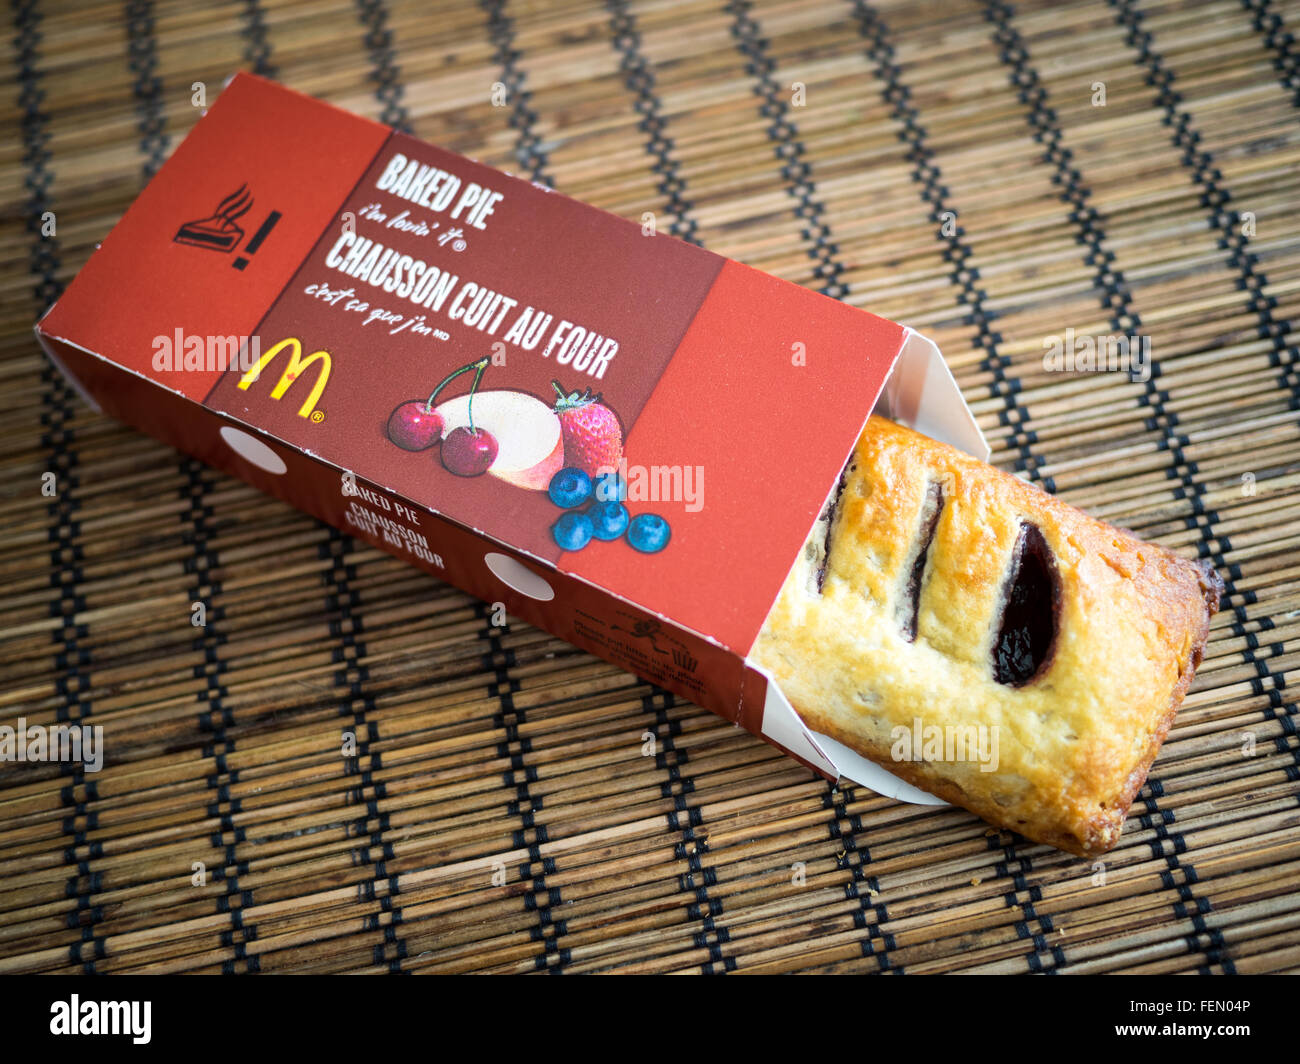 Un McDonald's cotta mirtillo maple pie, un periodo di tempo limitato la voce di menu di McDonald's in tutto il Canada. Foto Stock